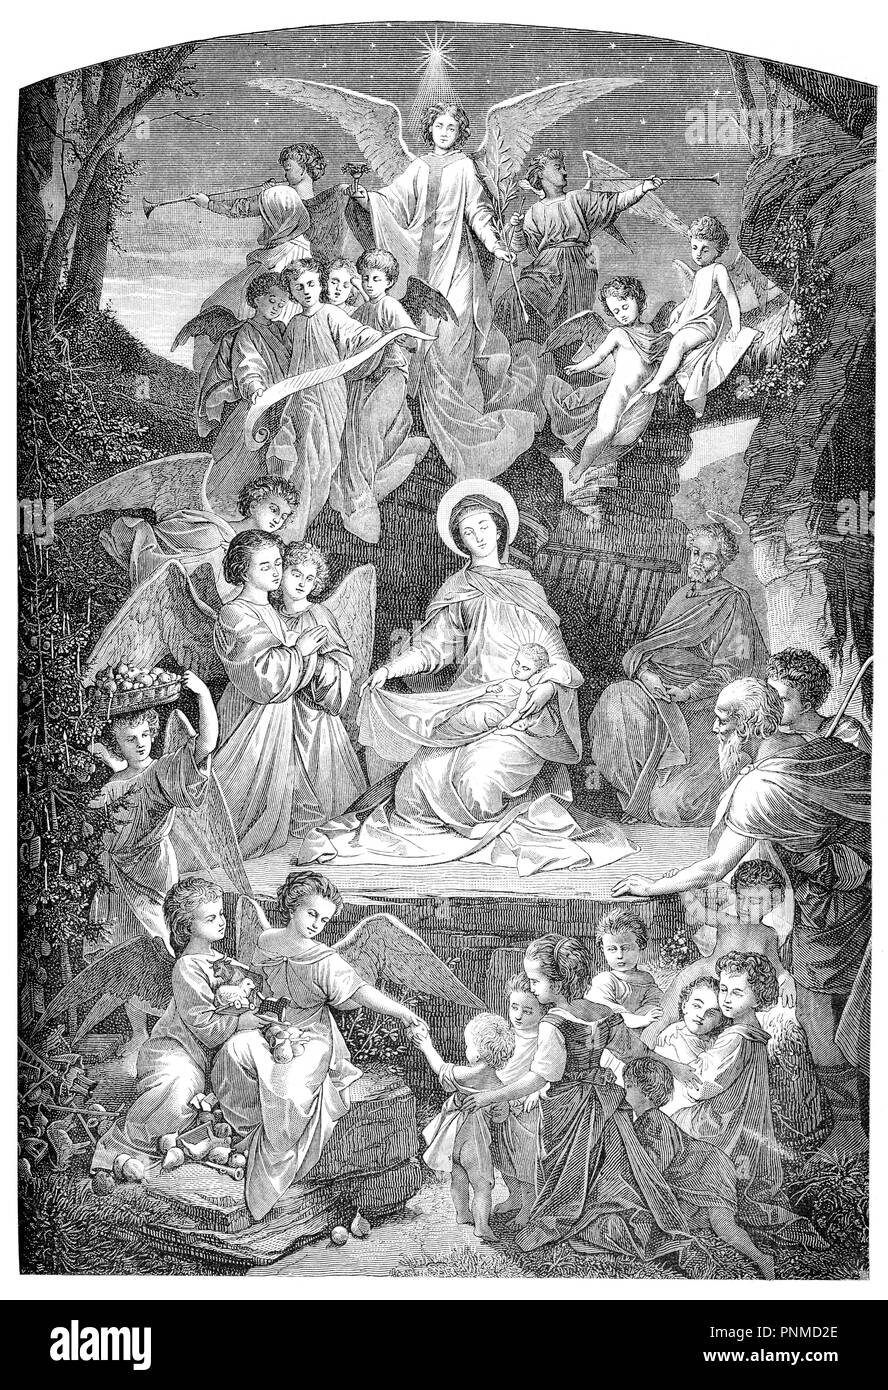 Nuit Sainte, Nativité, Sainte Marie, Joseph et l'enfant Jésus avec les anges, gravure d'époque Banque D'Images